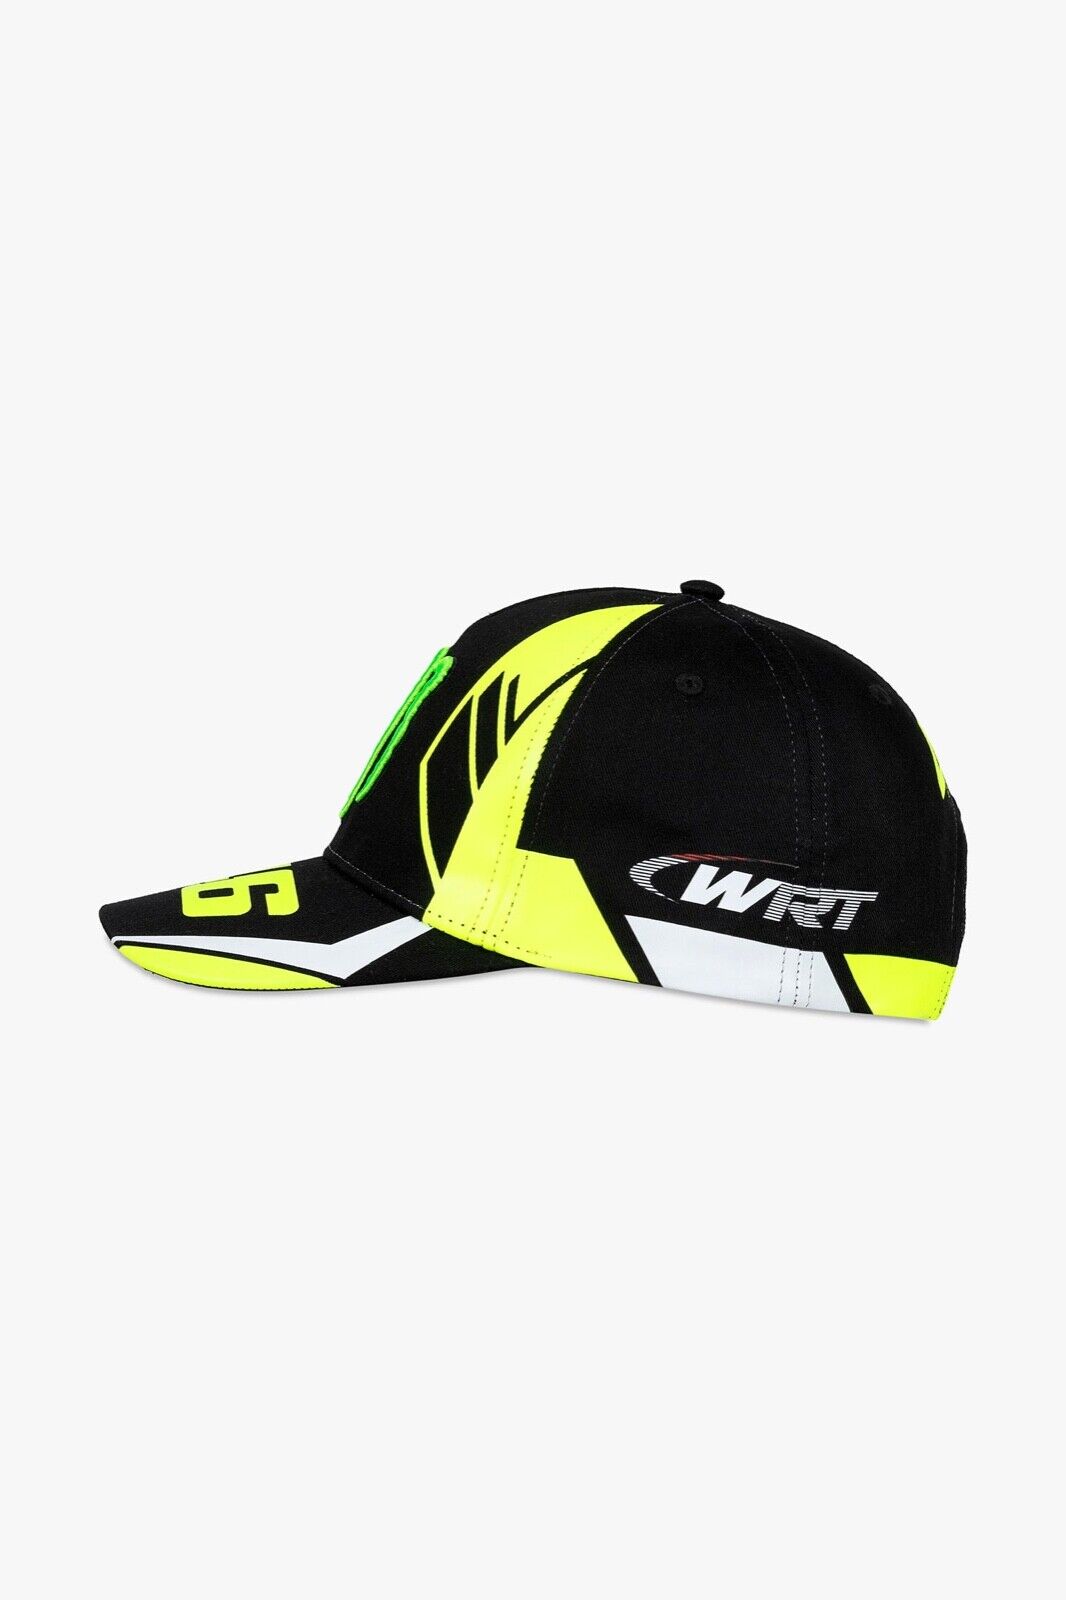 VR46 Official Valentino Rossi Wrt Monster Baseball Cap - Vamca 449403